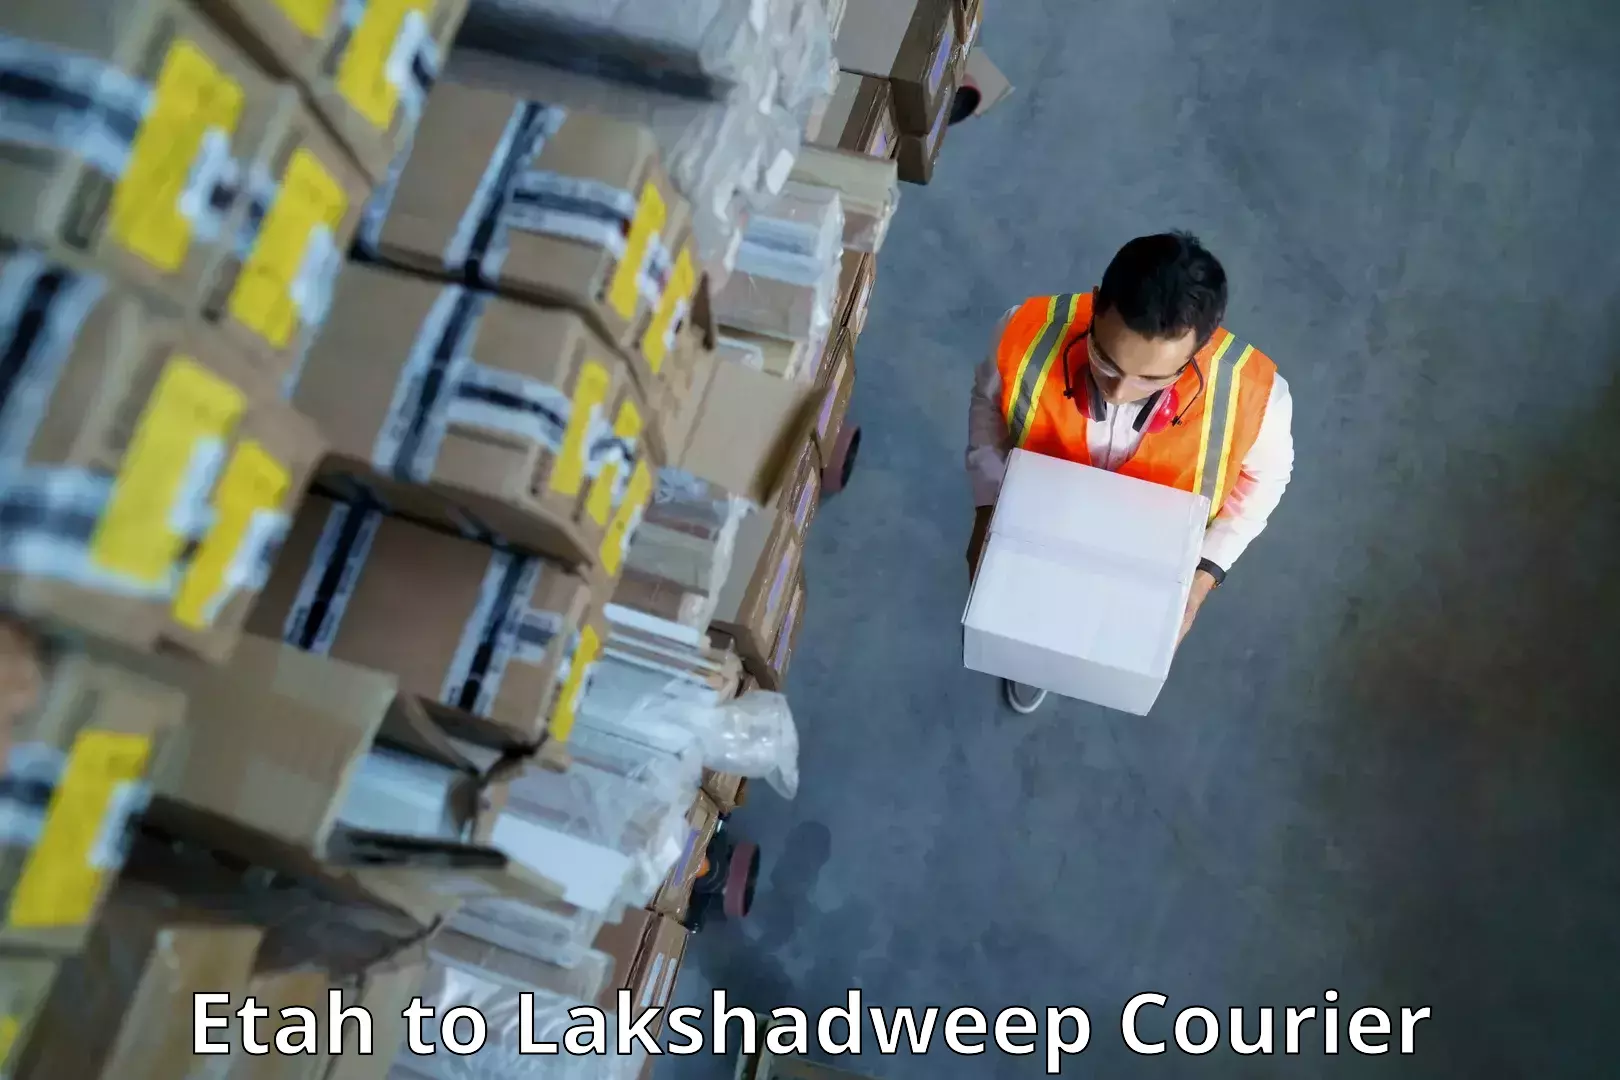 Efficient parcel delivery Etah to Lakshadweep